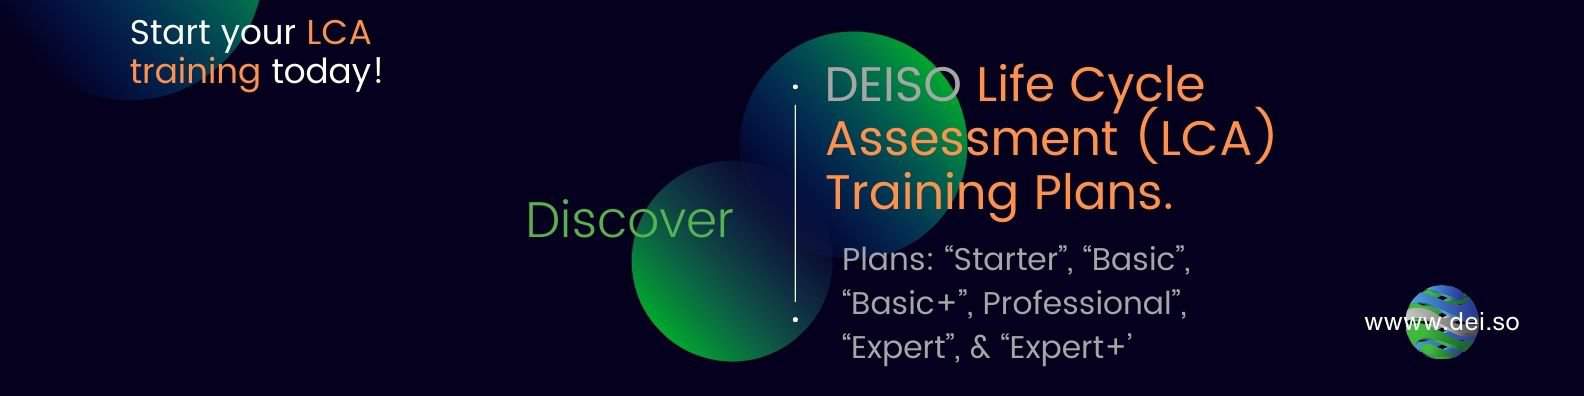 DEISO ライフ サイクル アセスメント LCA トレーニング プランとコース